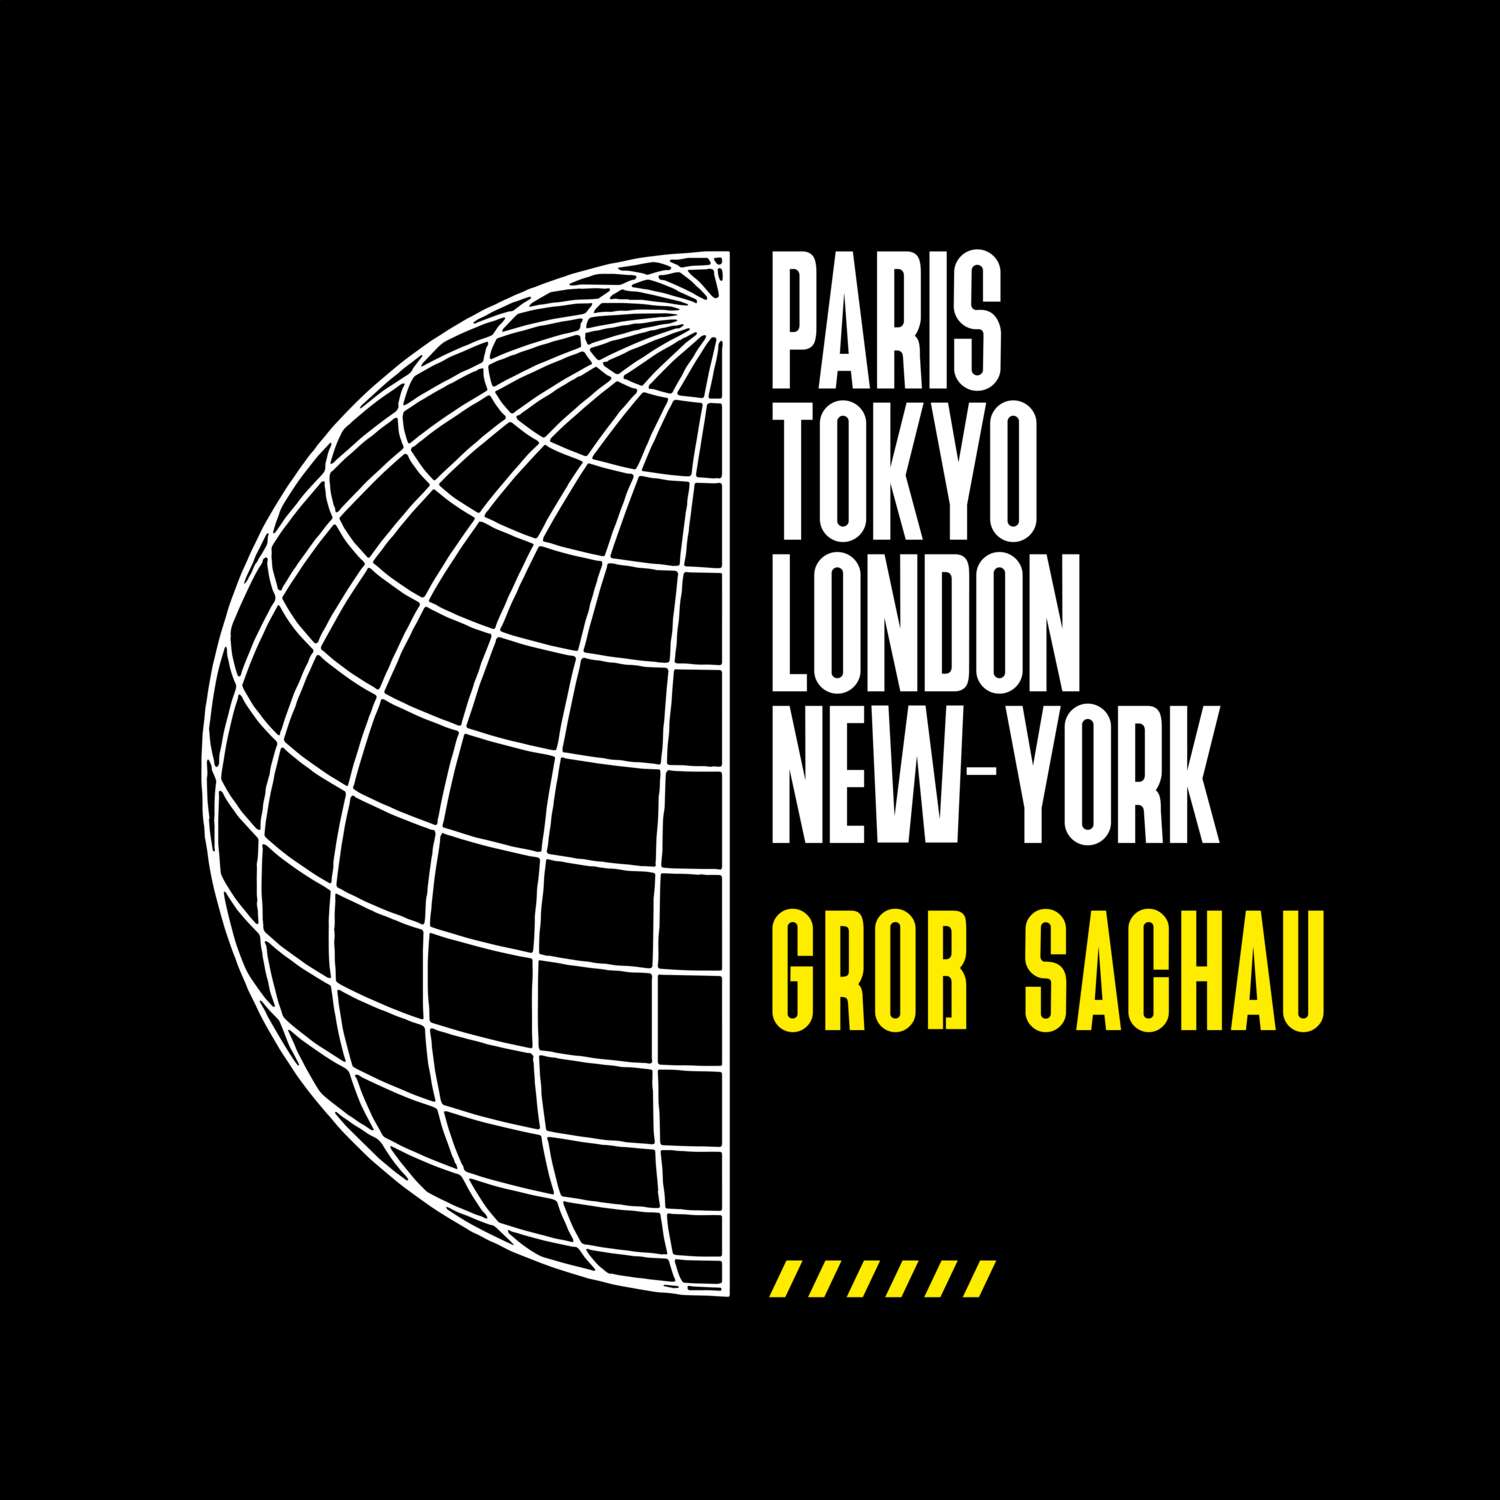 Groß Sachau T-Shirt »Paris Tokyo London«